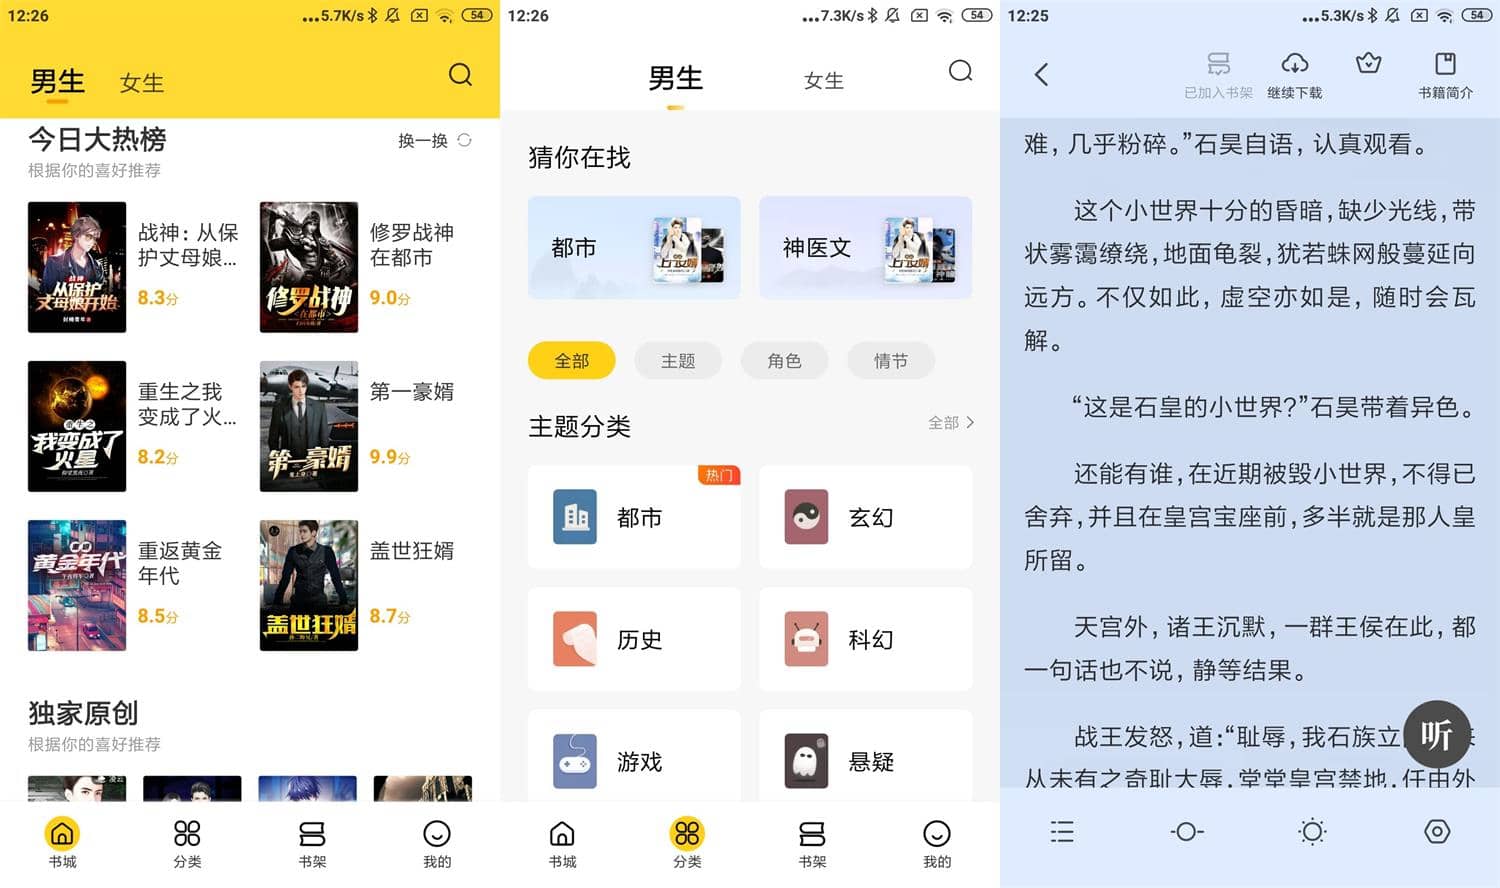 Android 全民小说 v7.14.3 去除广告会员破解版-无痕哥